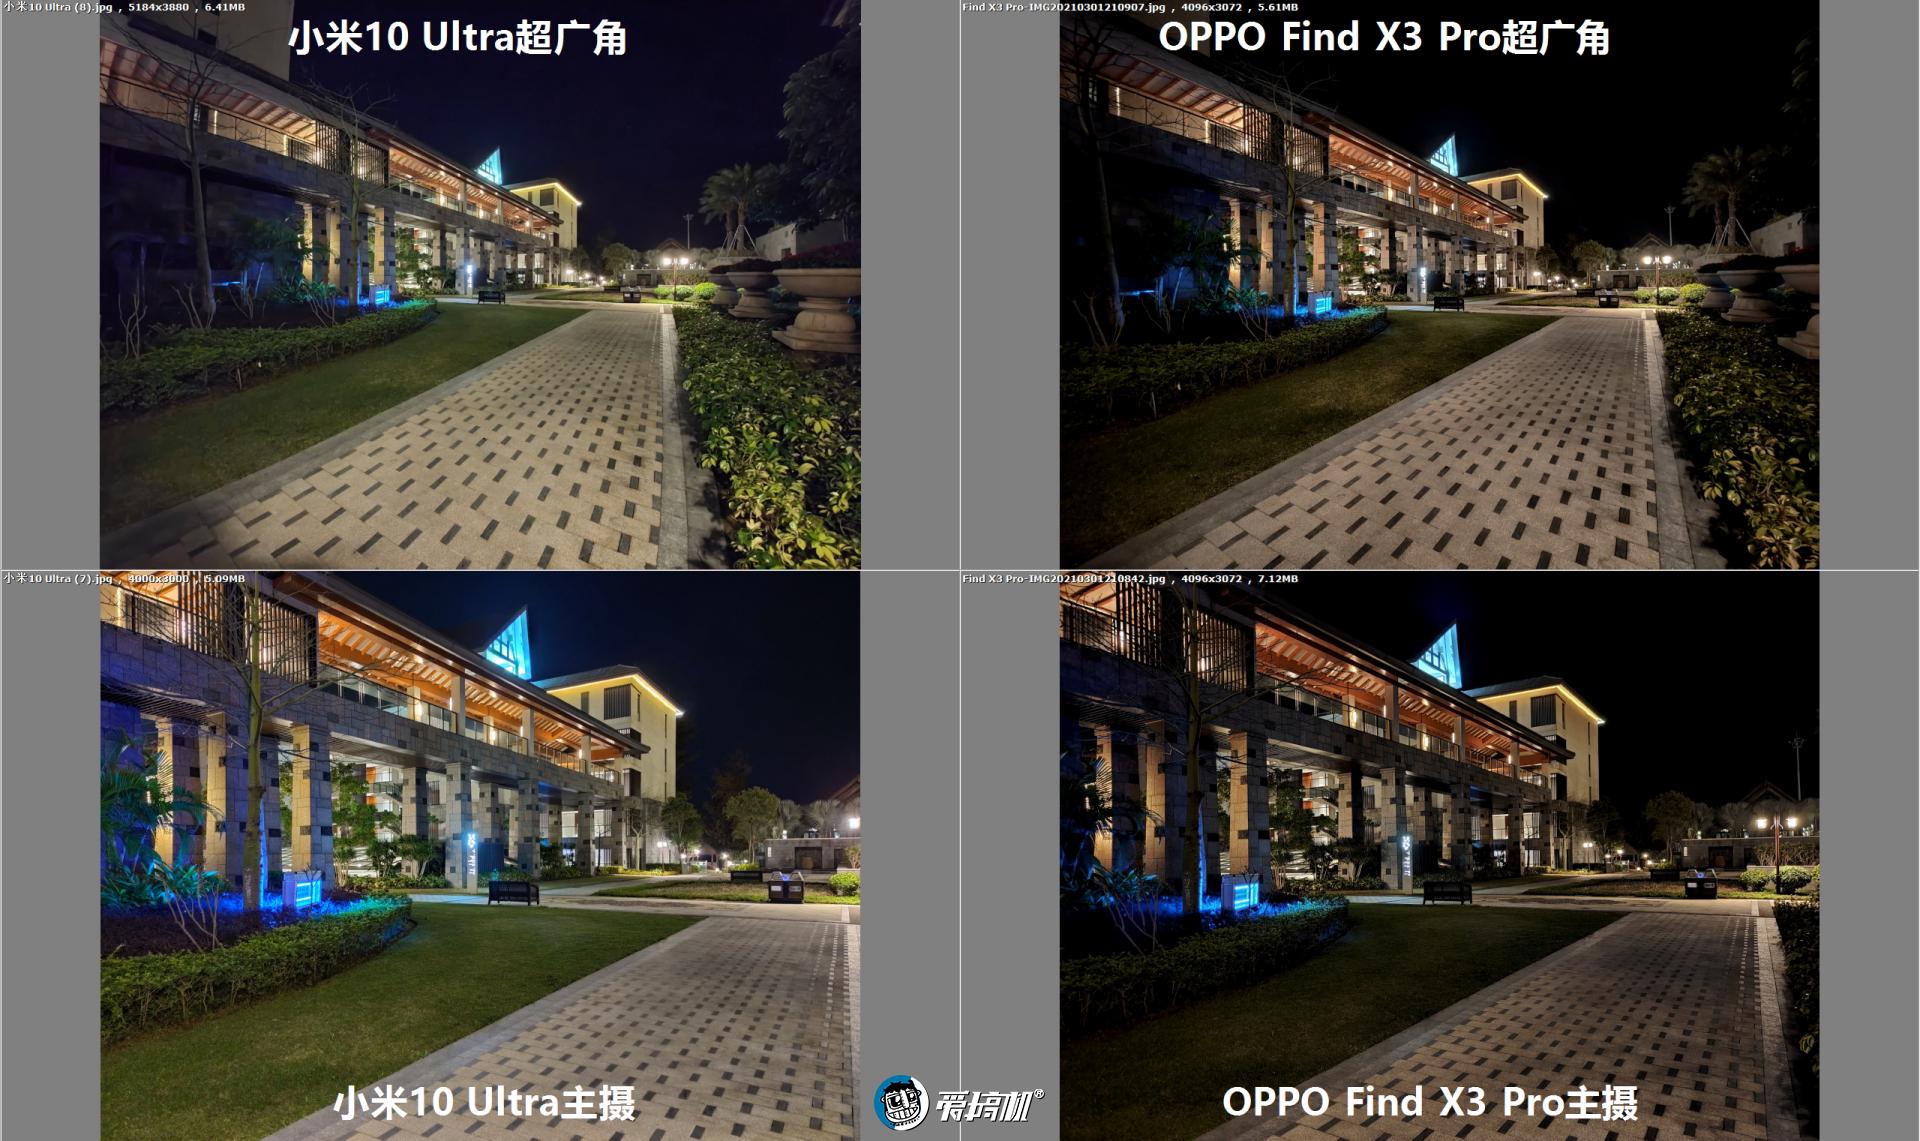 oppofindx3拍照对比图片